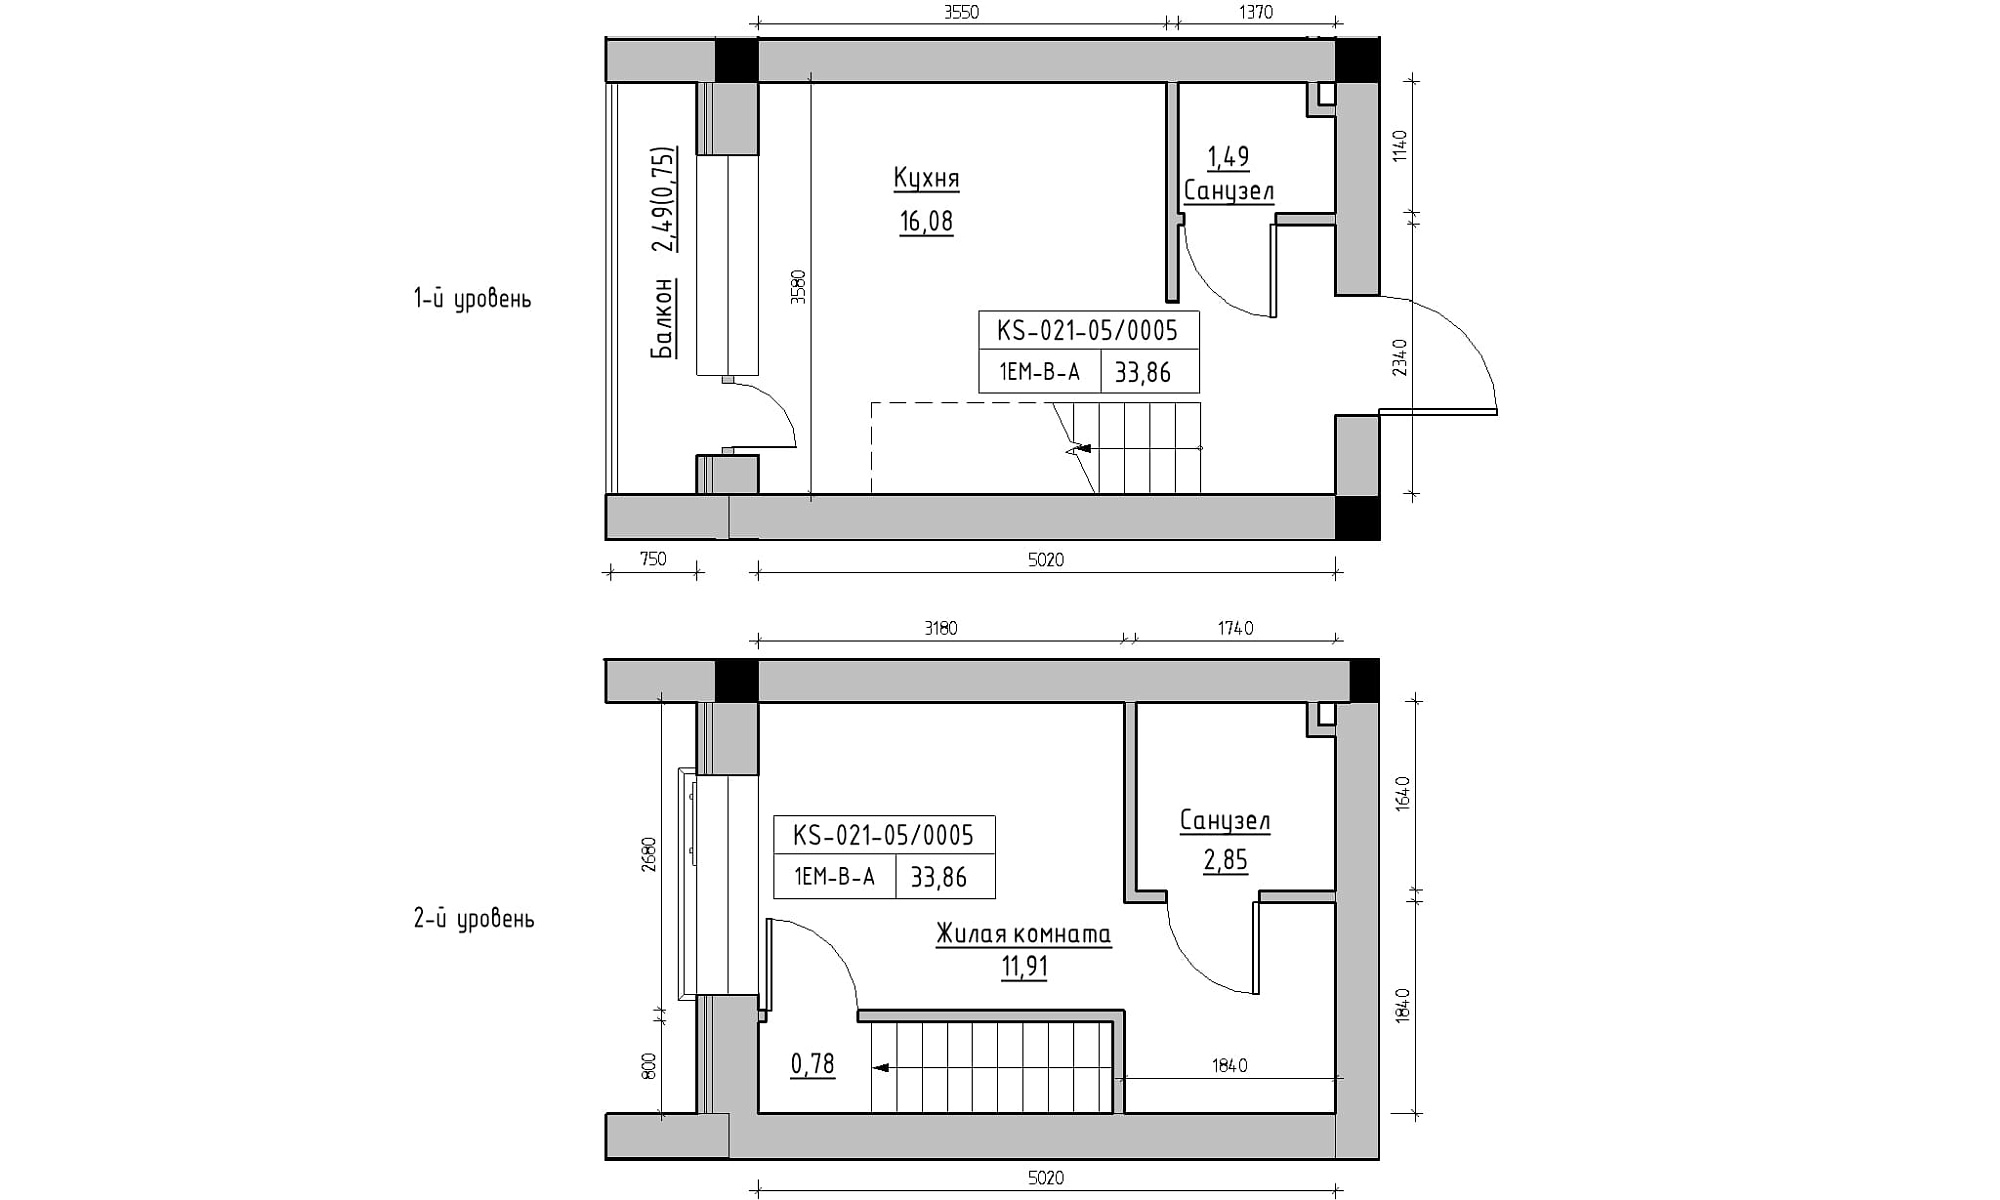 Planning 2-lvl flats area 33.86m2, KS-021-05/0005.